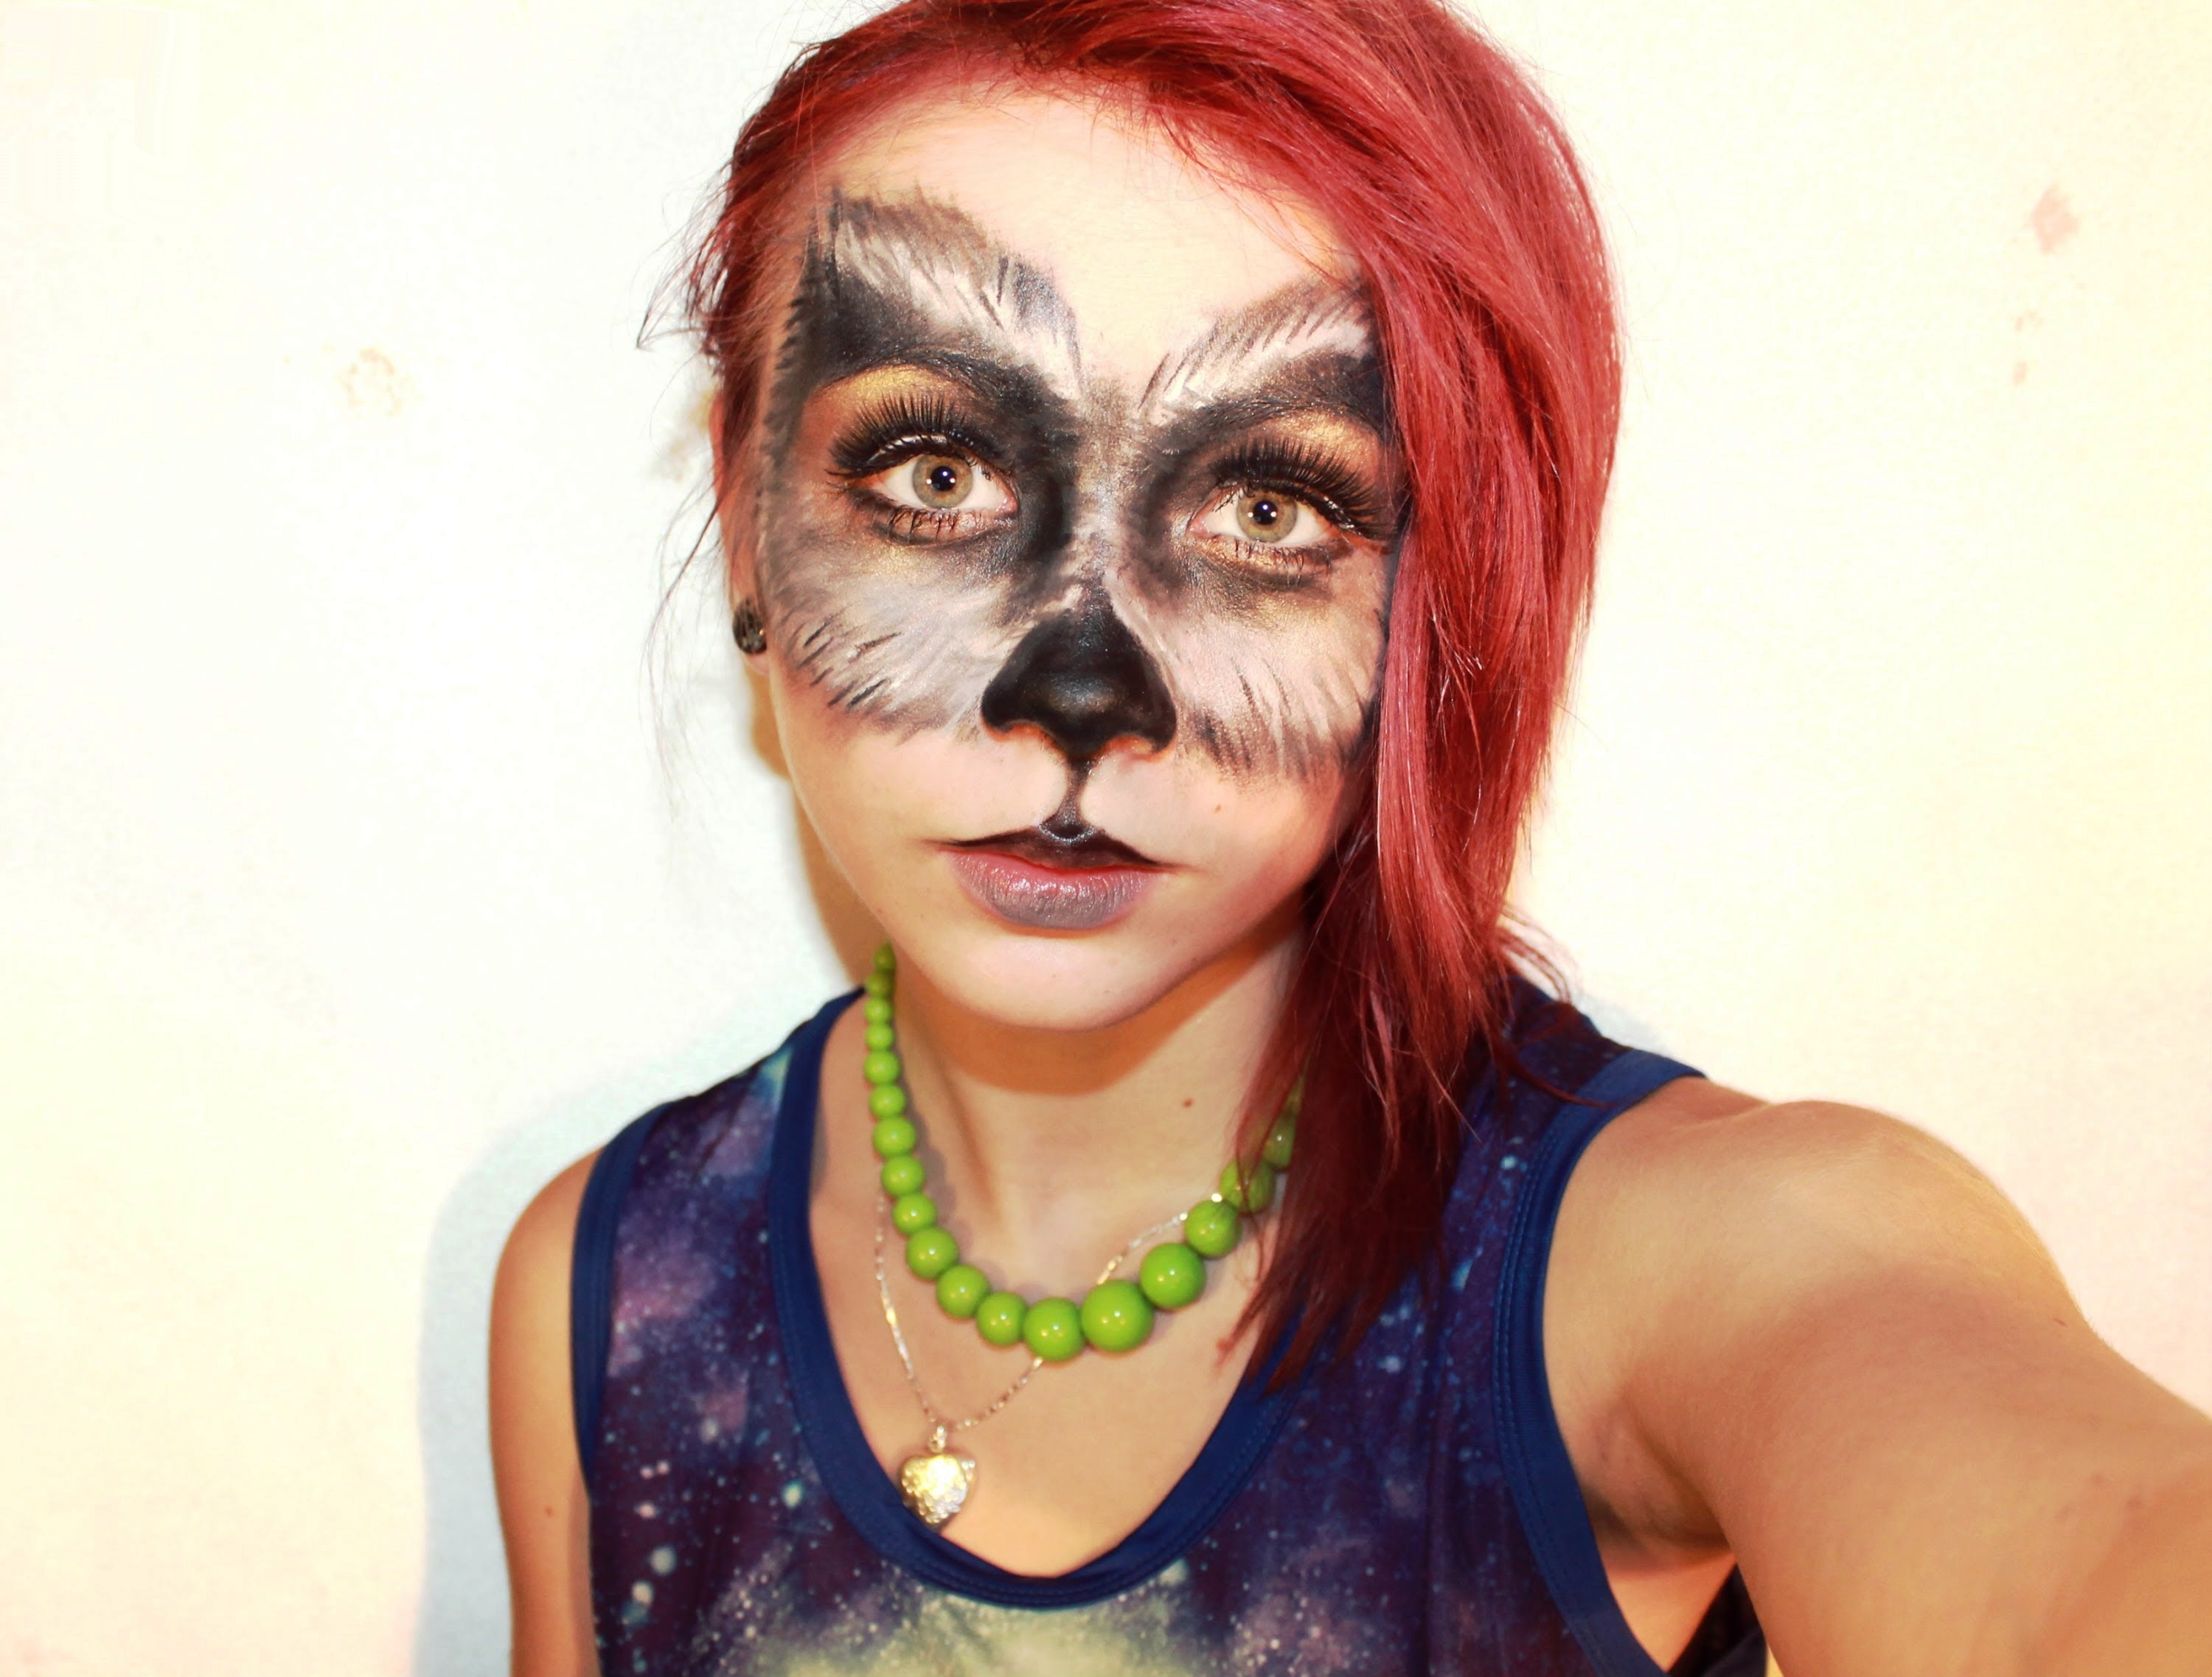 She-Wolf Halloween Makeup